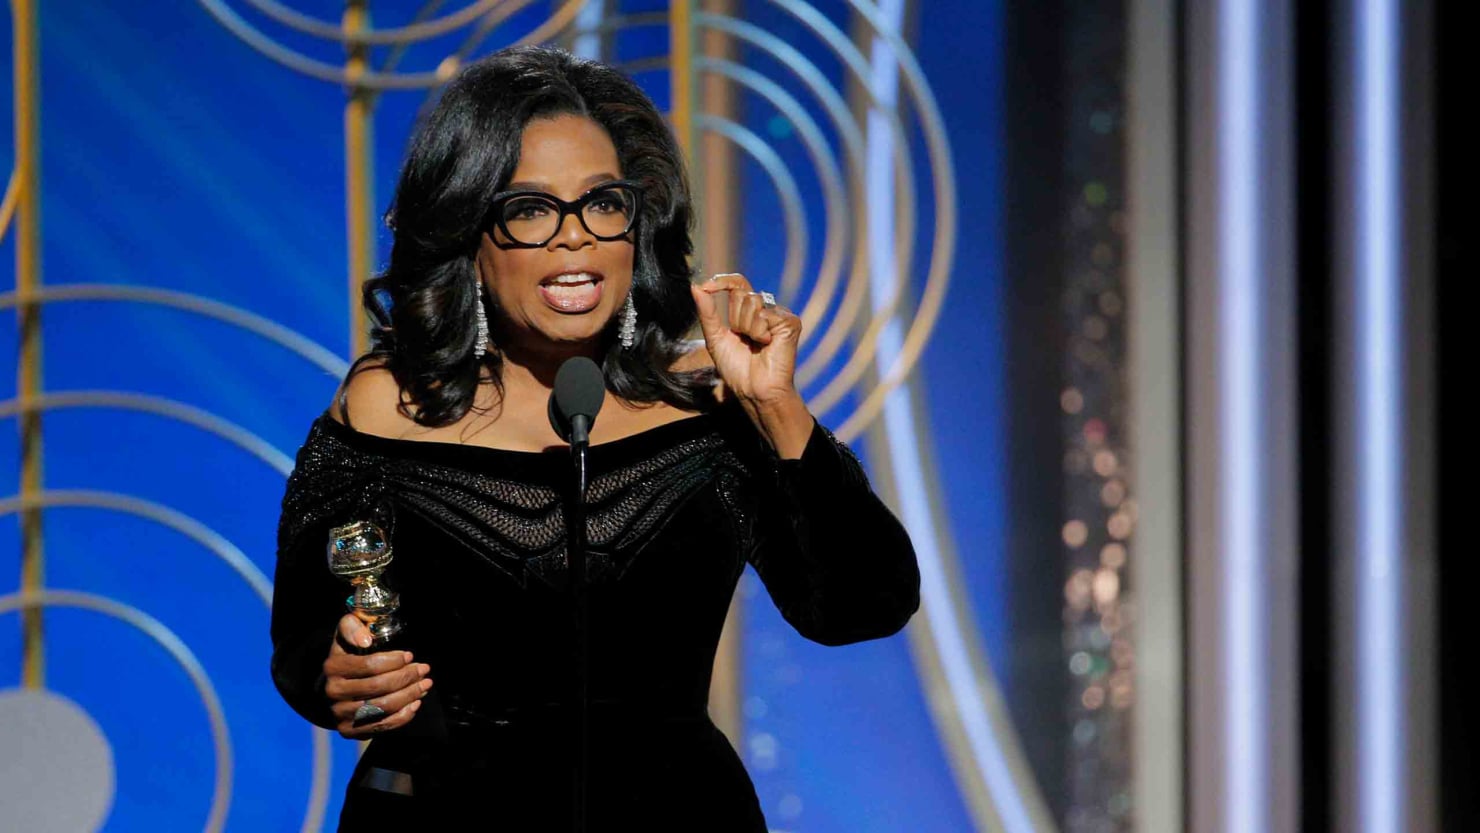 Oprah Winfrey Announces She's Running For President In 2020